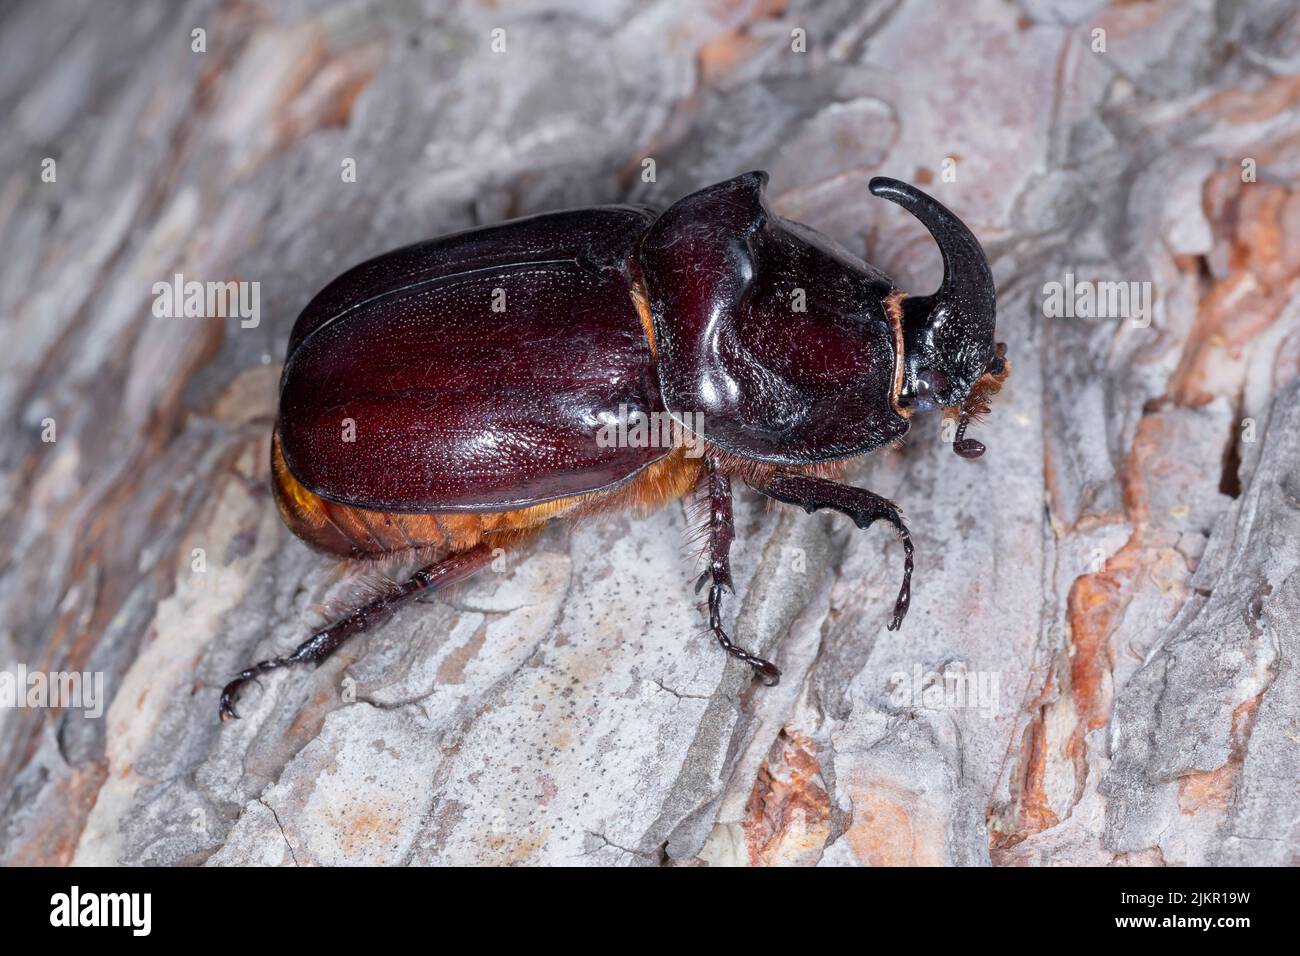 primer plano del escarabajo del rinoceronte sentado sobre la corteza del pino Foto de stock